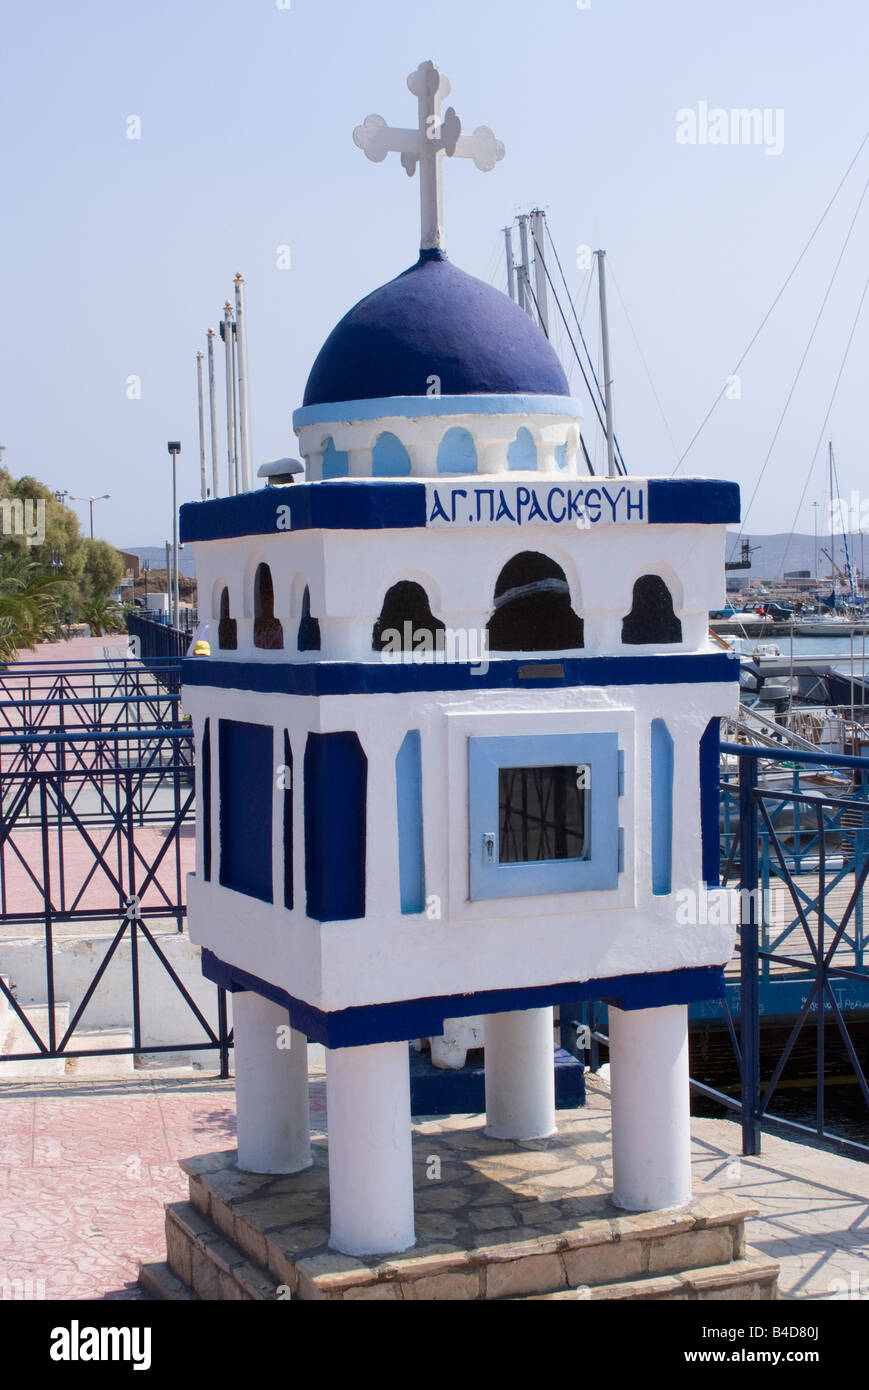 Ein Schrein oder Denkmal in Erinnerung an Fischer und Seeleute verloren auf See am Hafen Lavrio Hafen Ägäis griechische Festland Griechenland Stockfoto